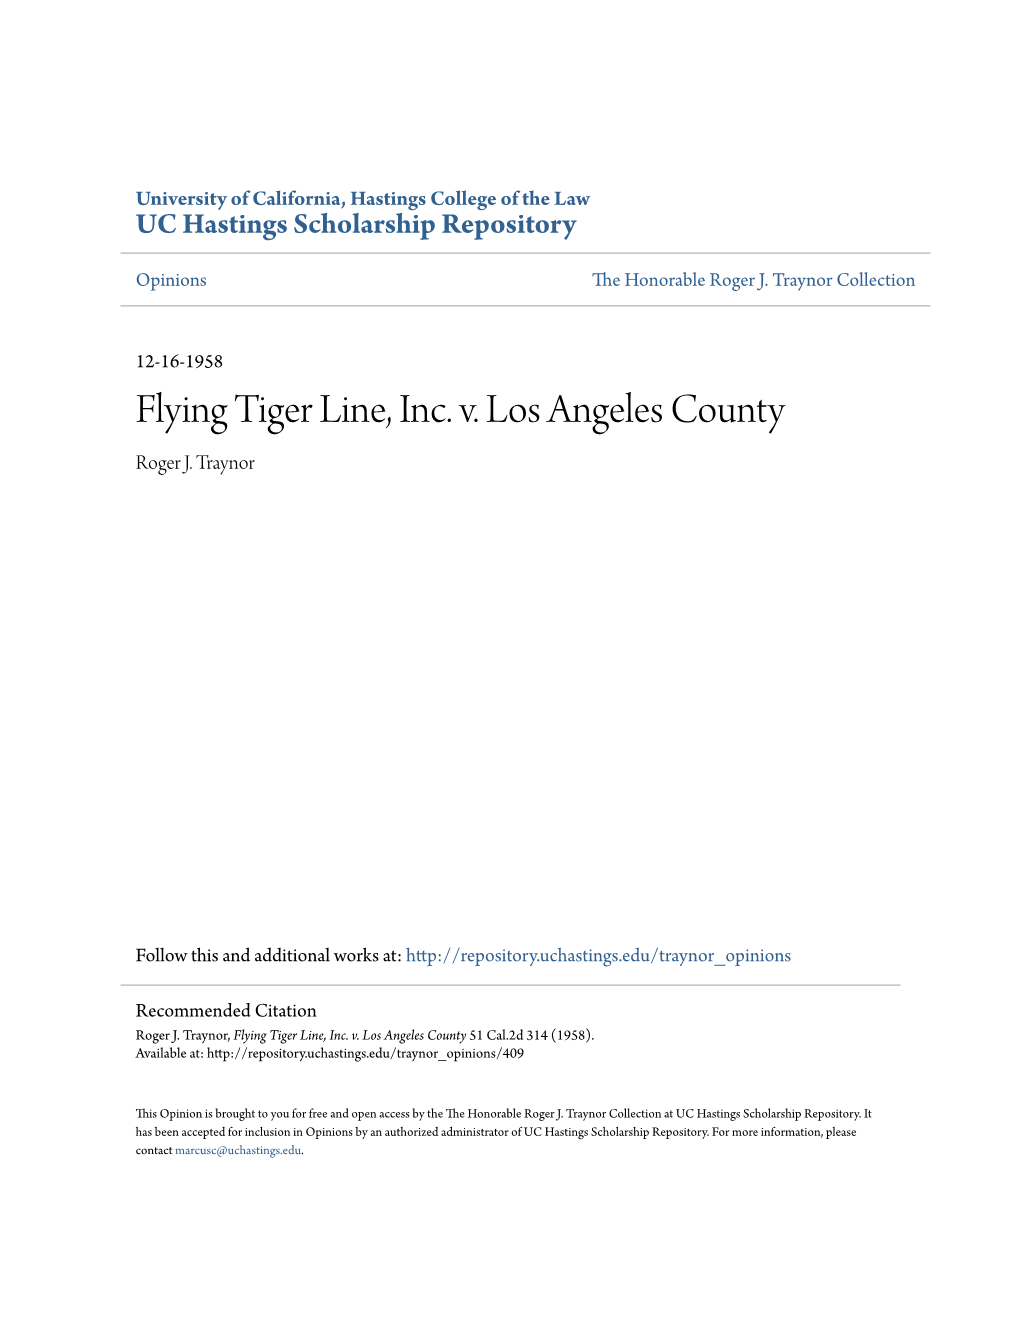 Flying Tiger Line, Inc. V. Los Angeles County Roger J